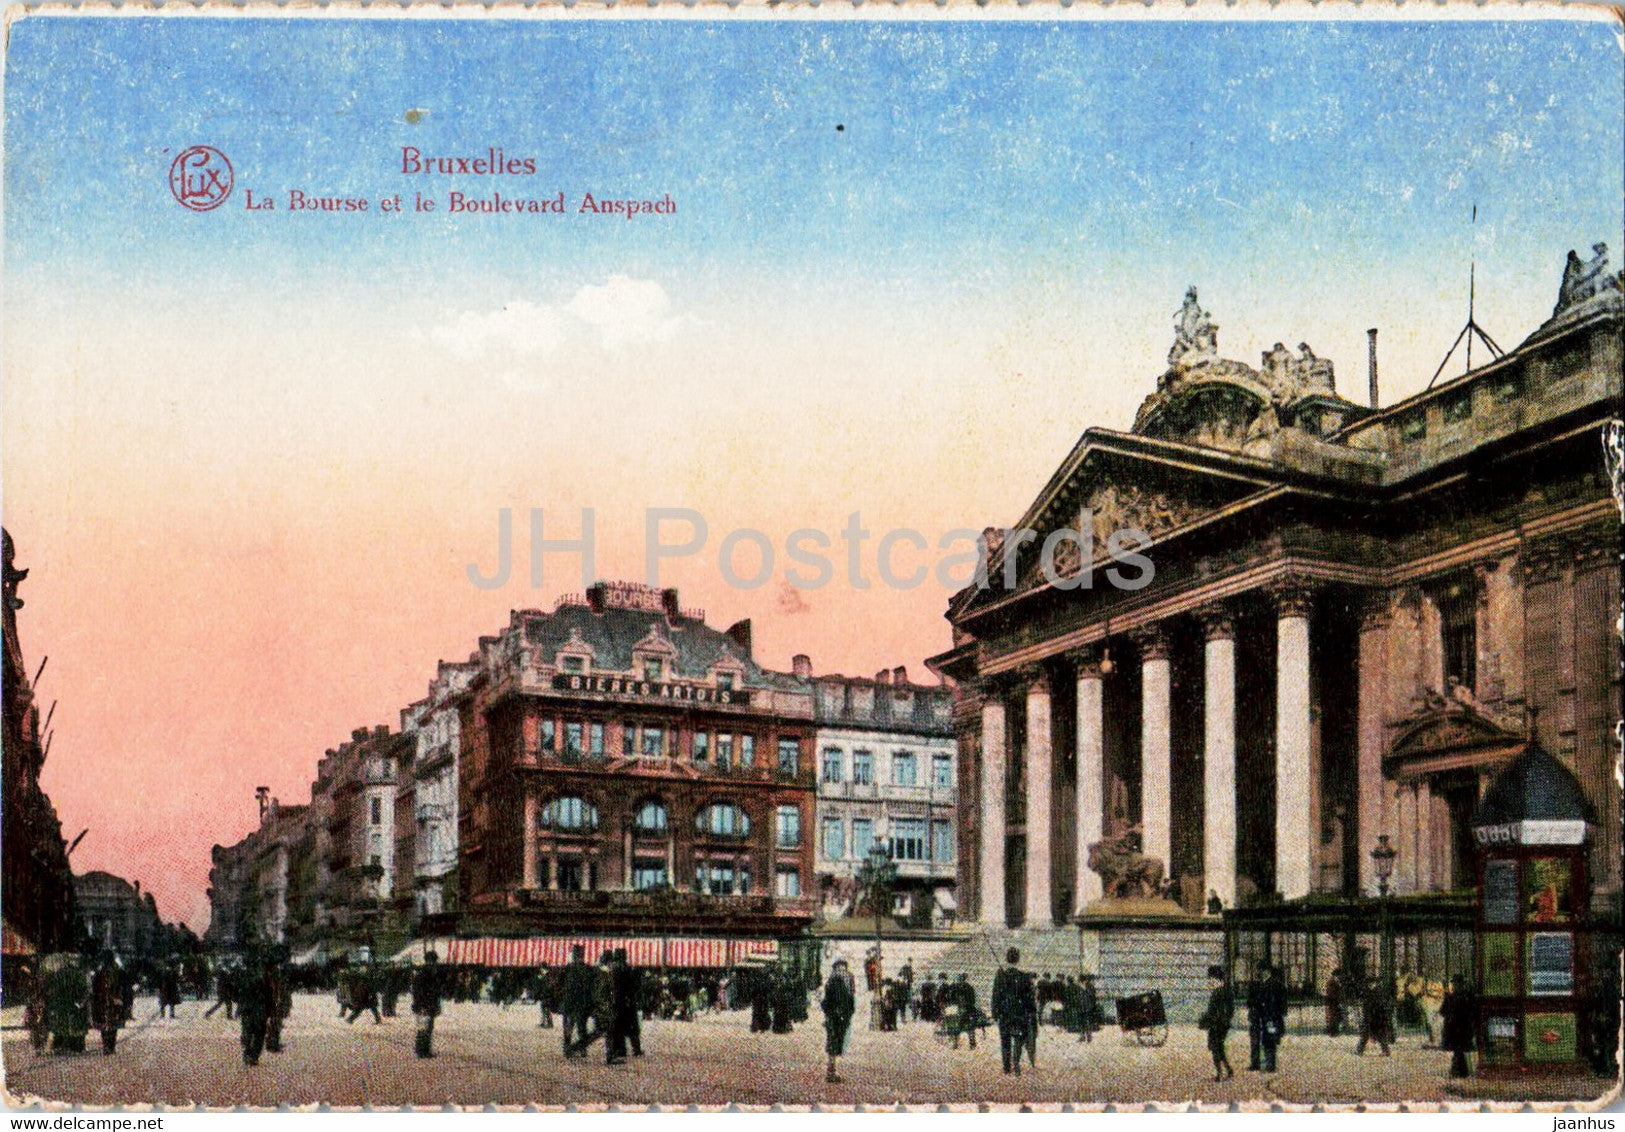 Bruxelles - Brussels - La Bourse et le Boulevard Anspach - old postcard - Belgium - used - JH Postcards